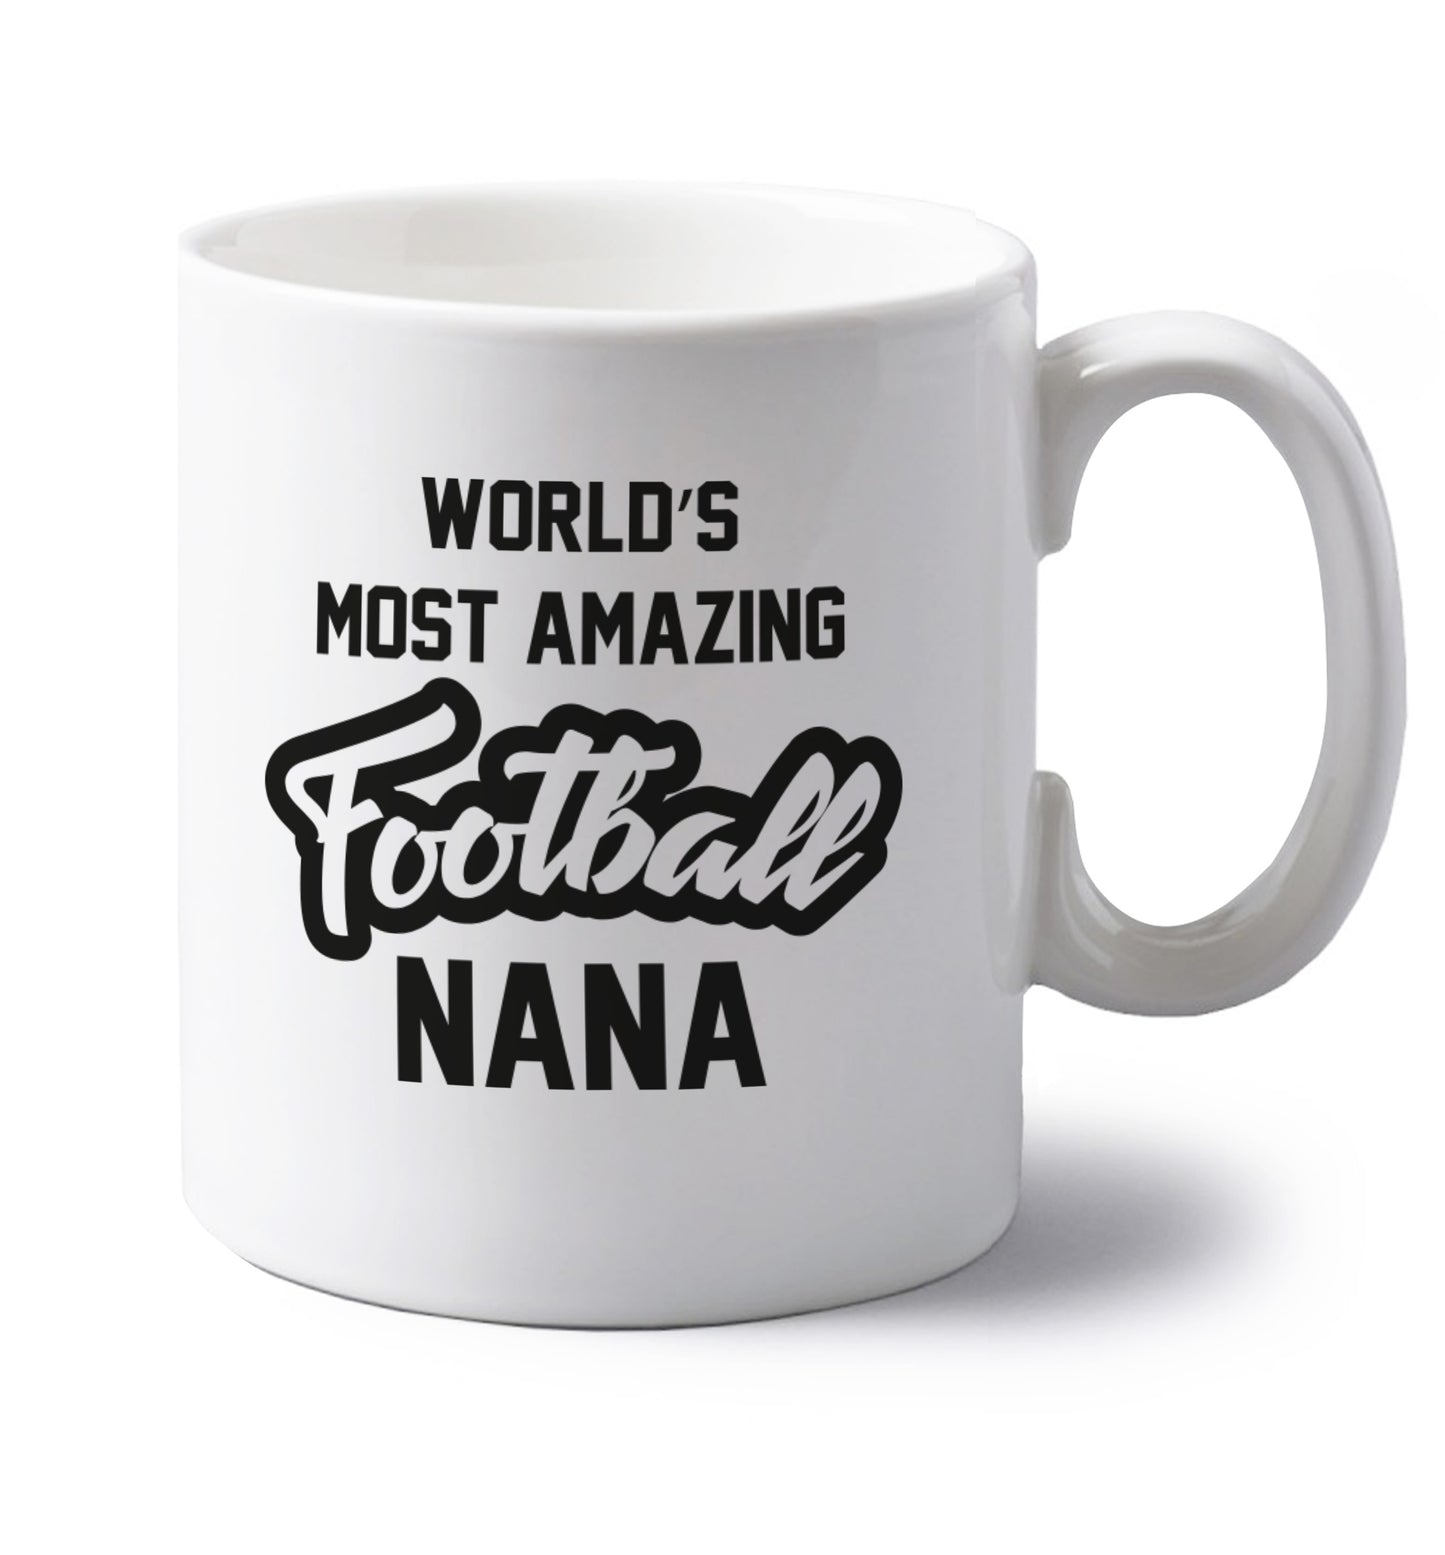 Worlds most amazing football nana left handed white ceramic mug 